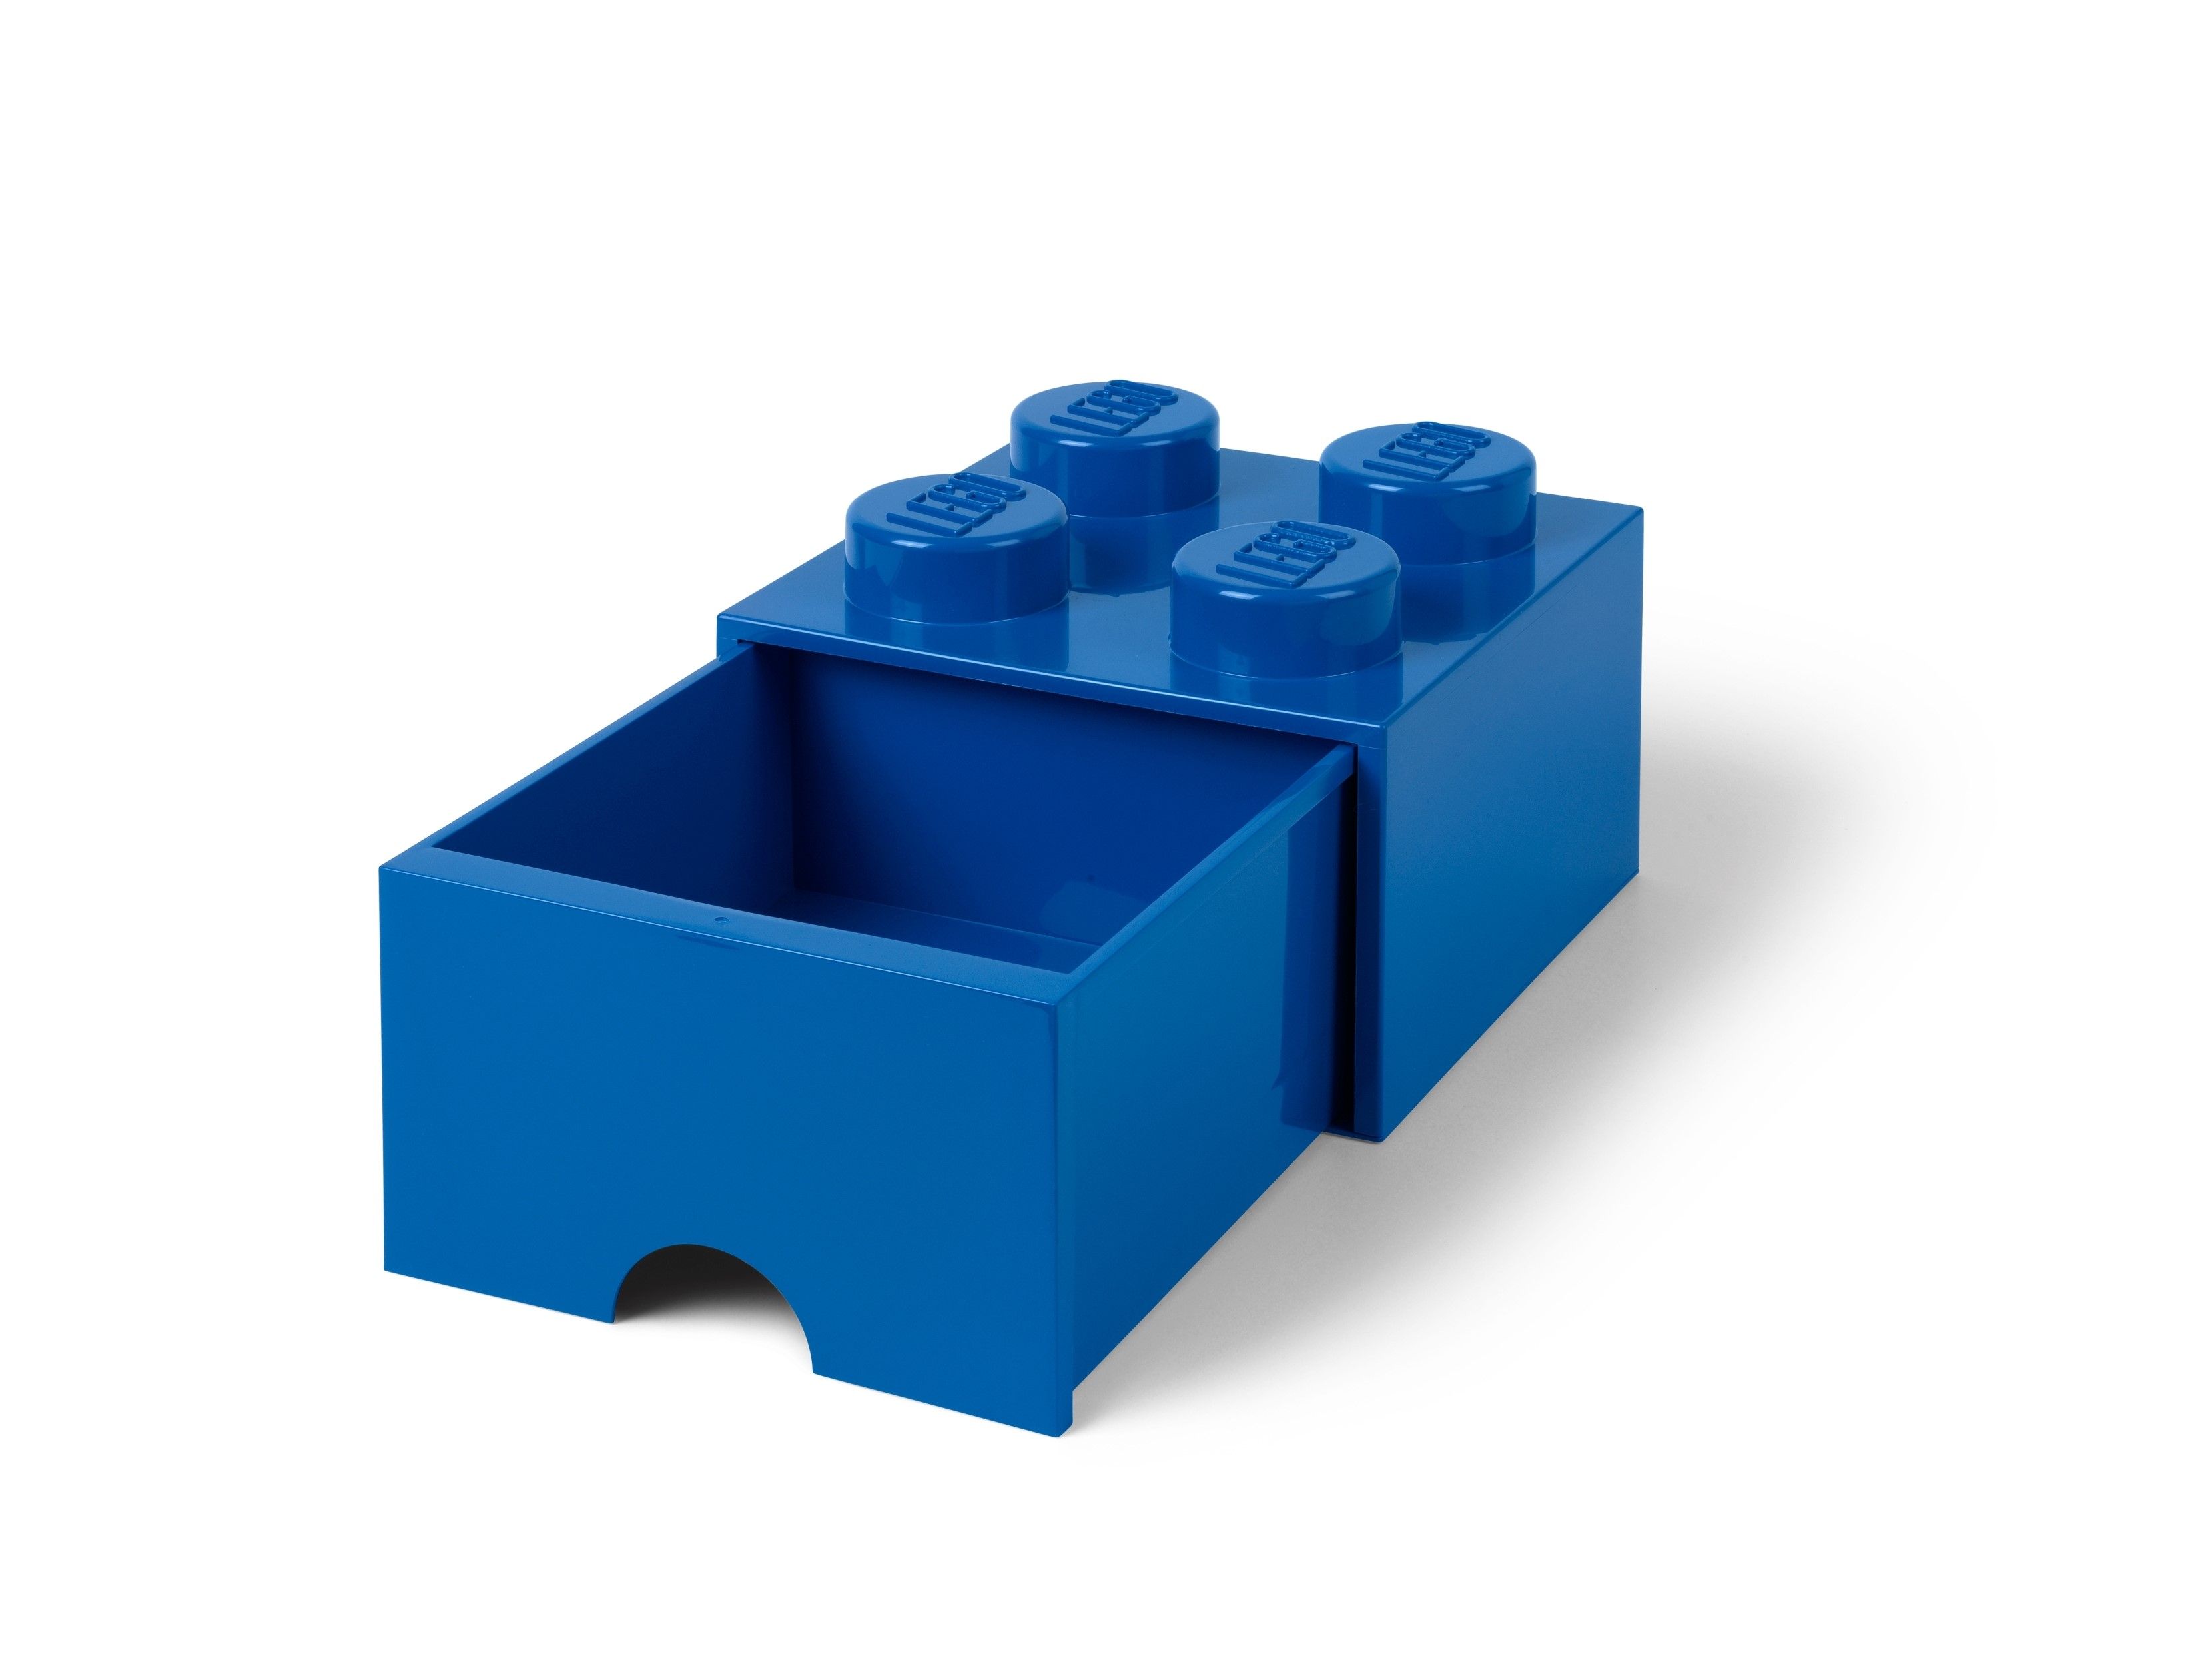 LEGO Gear 5006141 AUFBEWAHRUNGSSTEIN MIT SCHUBFACH UND 4 NOPPEN IN BLAU LEGO_5005403_alt2.jpg